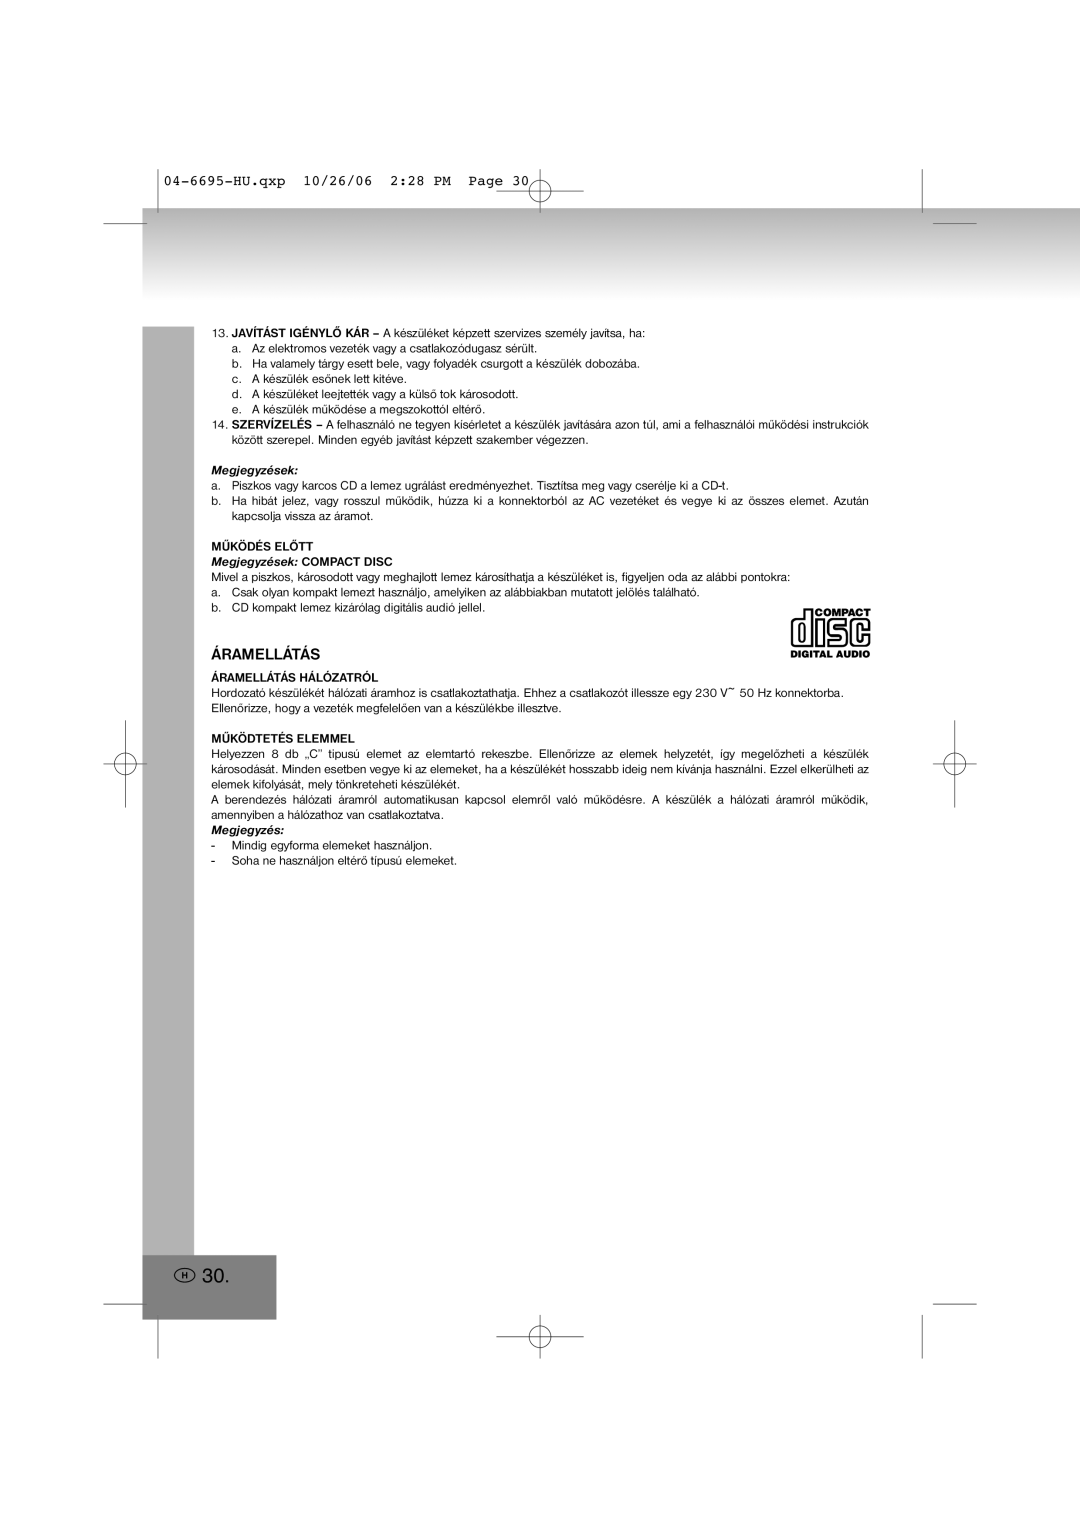 Elta manual Áramellátás, 04-6695-HU.qxp10/26/06 2 28 PM Page, Megjegyzések COMPACT DISC 